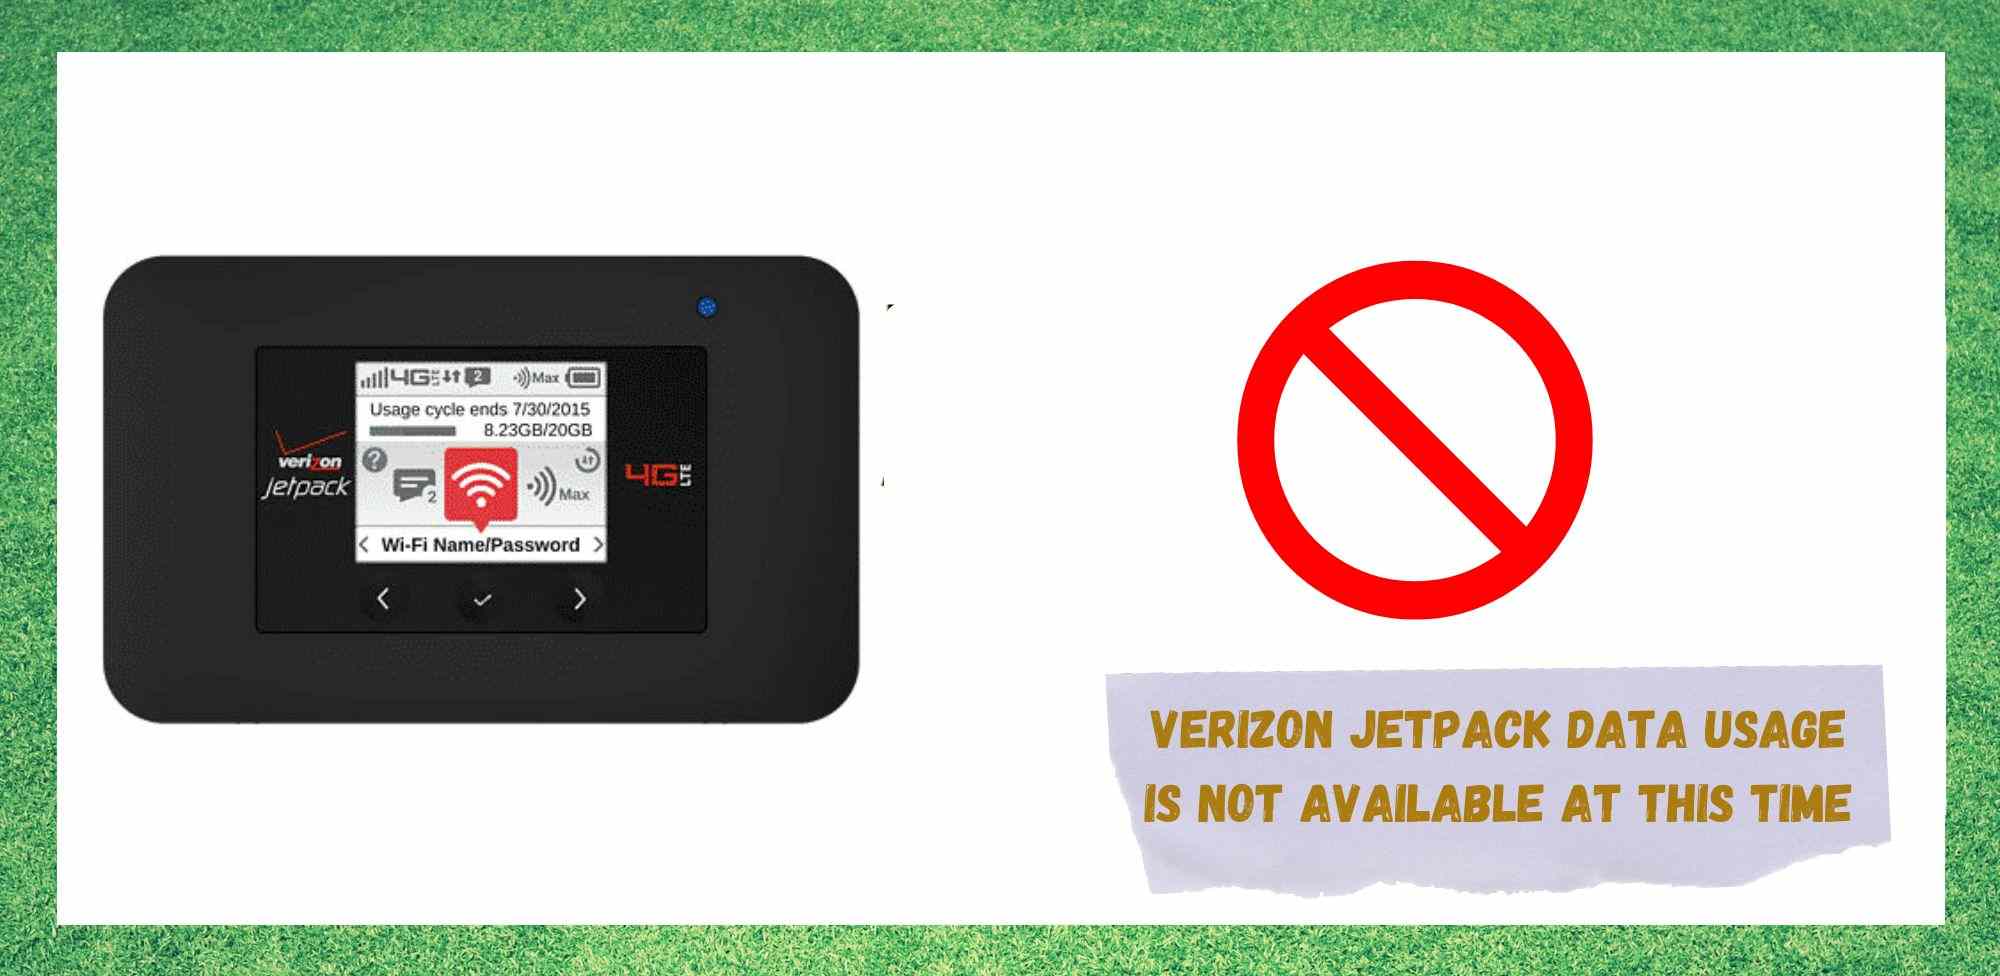 7 ວິທີທີ່ຈະແກ້ໄຂການໃຊ້ Verizon Jetpack Data ແມ່ນບໍ່ສາມາດໃຊ້ໄດ້ໃນເວລານີ້